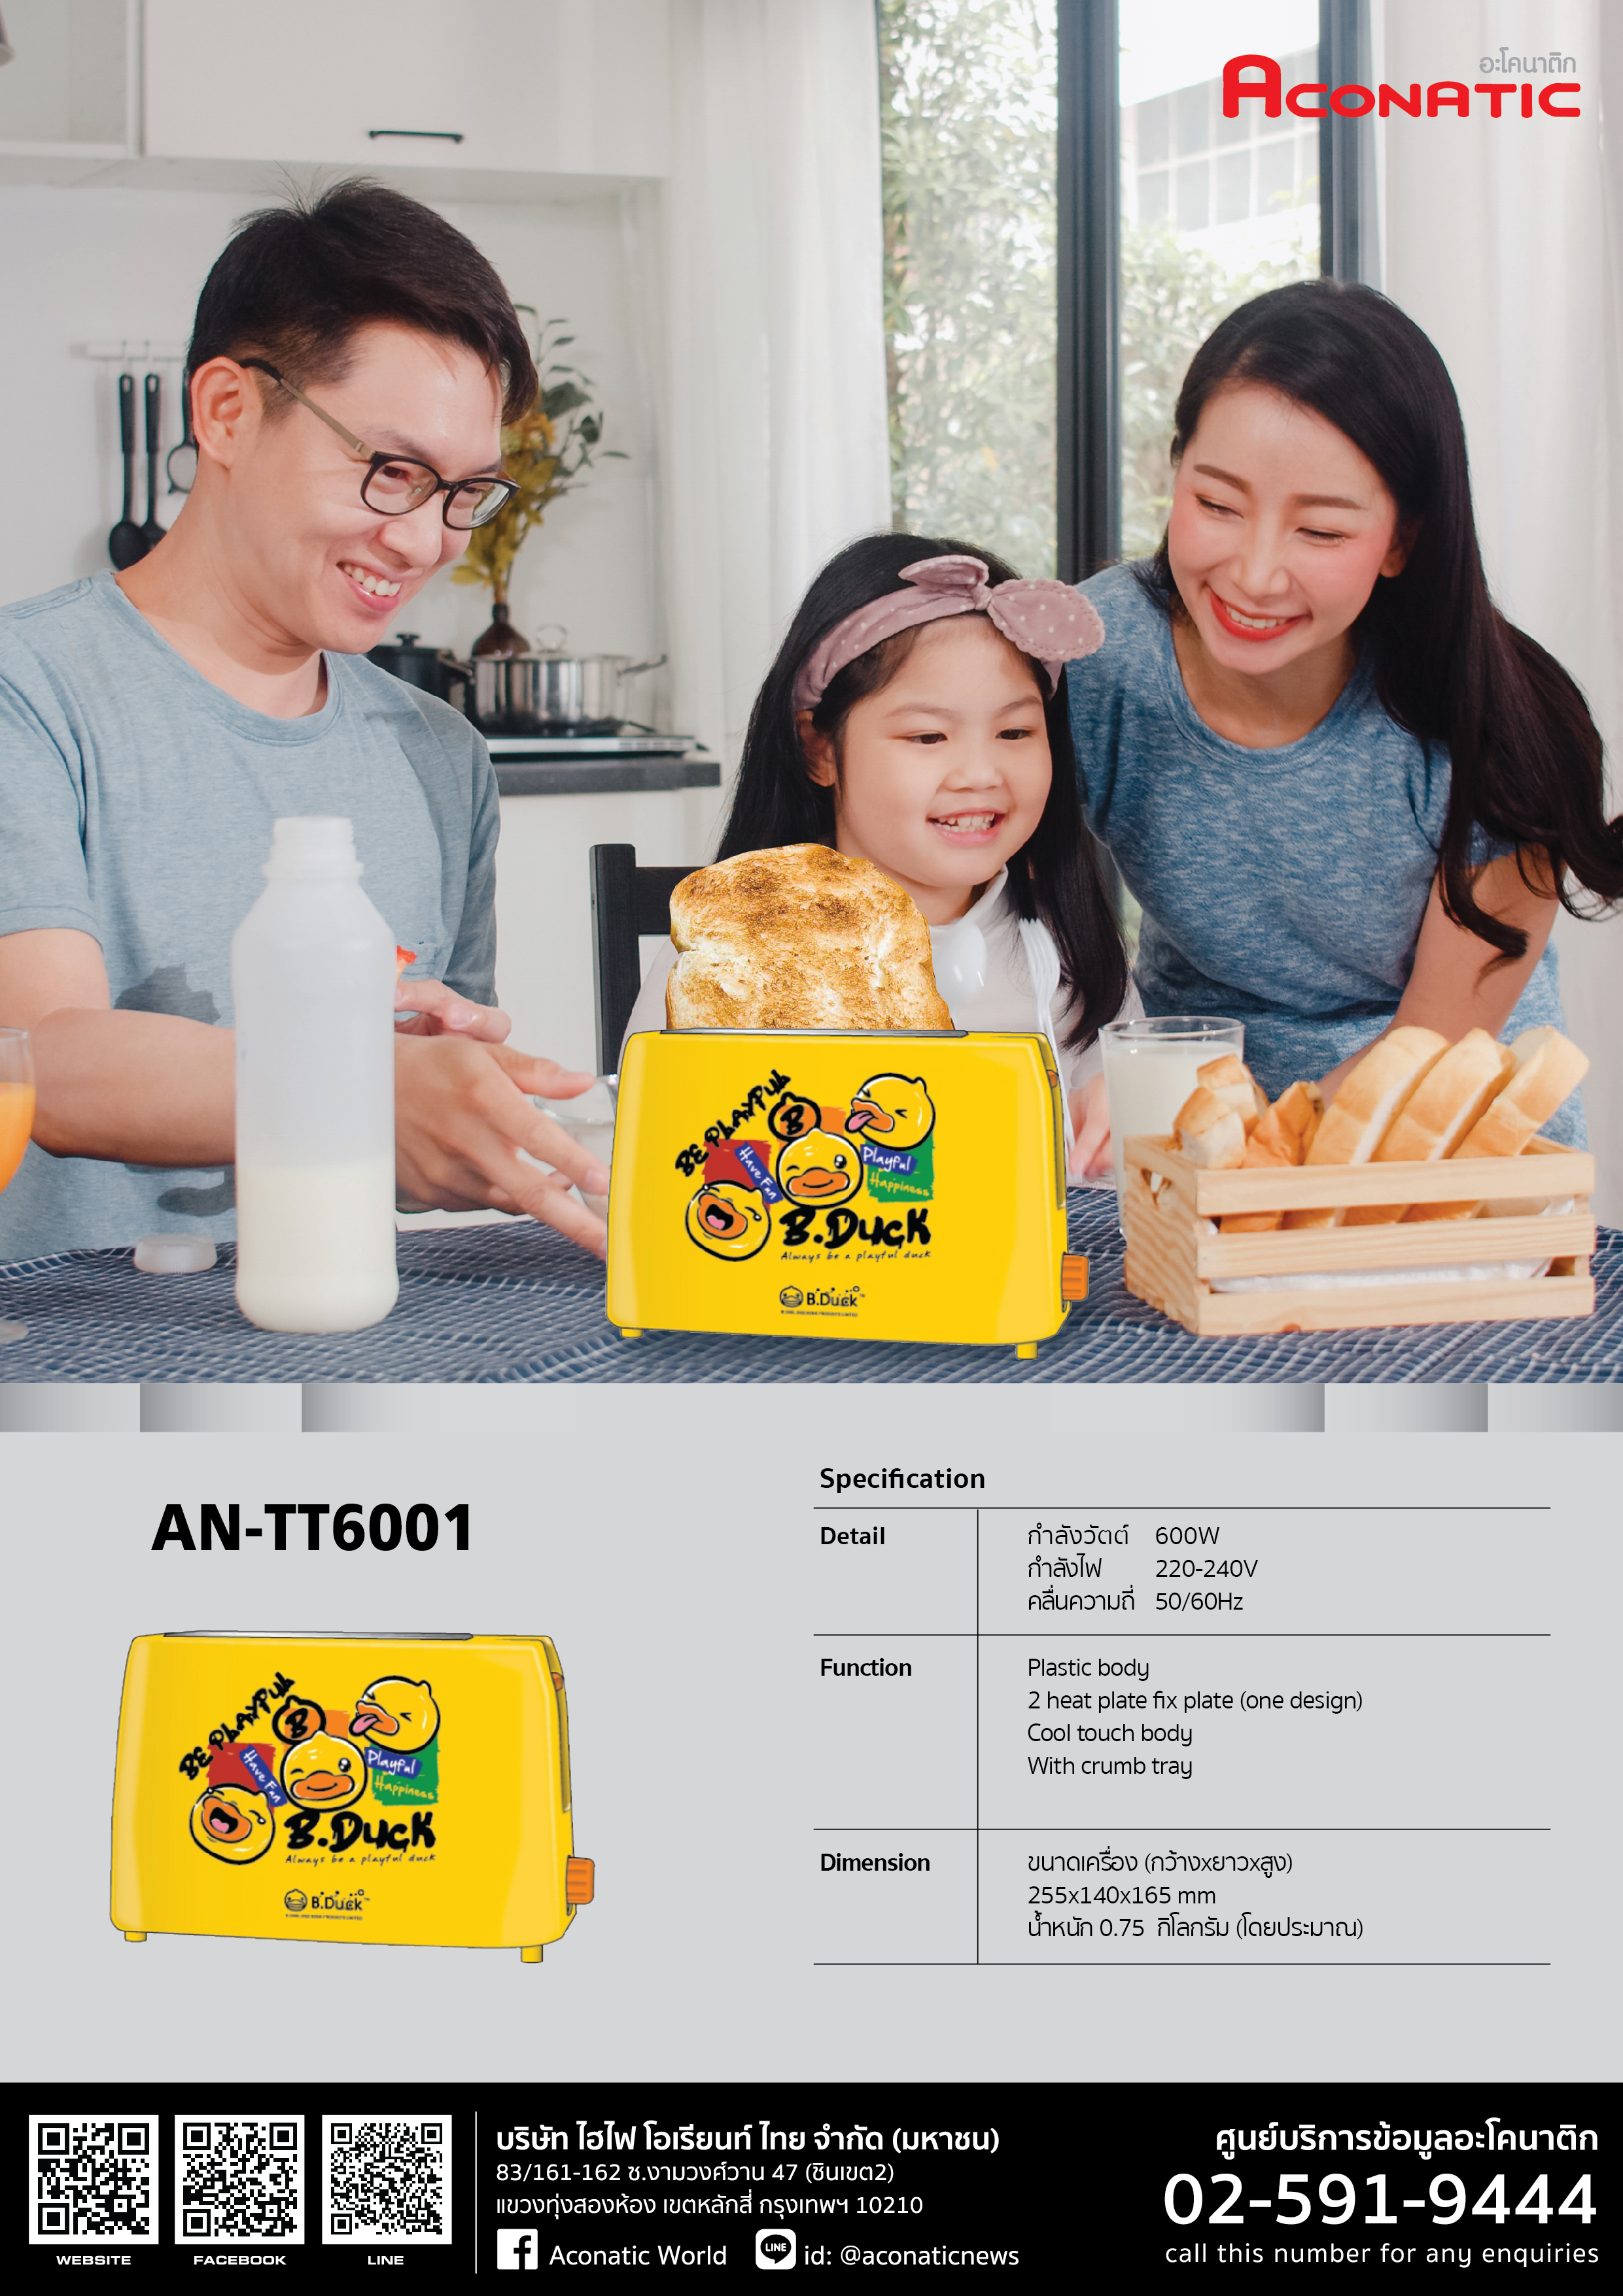 Toaster B-Duck model AN-TT6001